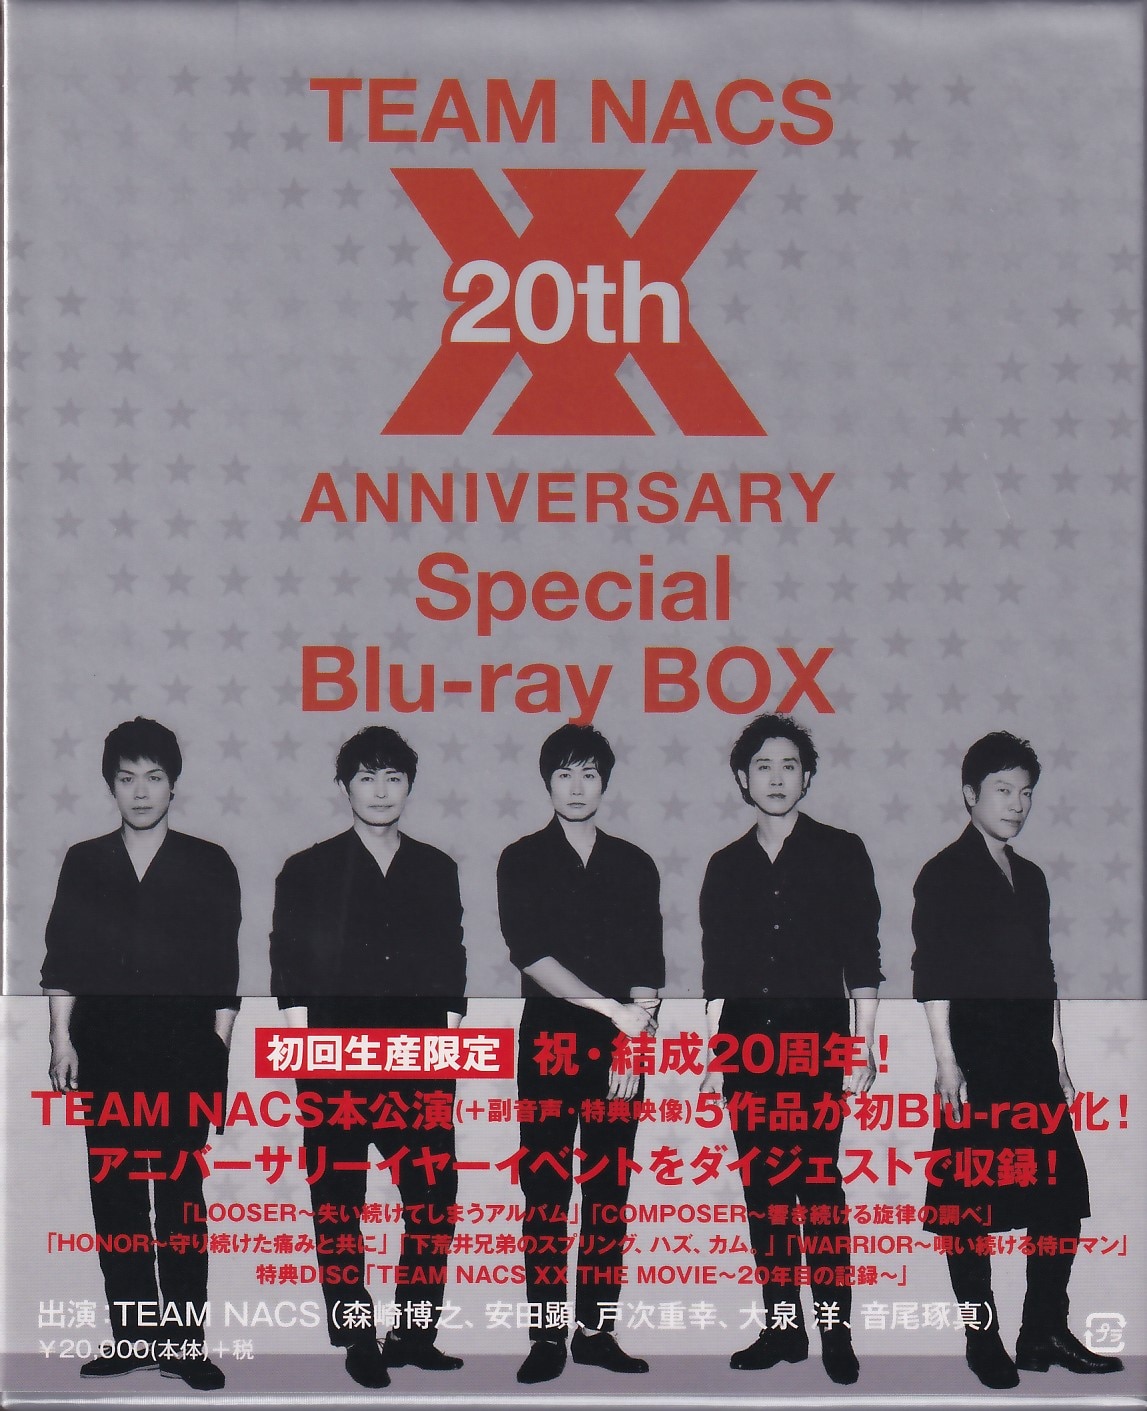 チームナックス☆TEAM NACS☆20th ANNIVERSARY Special Blu-ray BOX ...